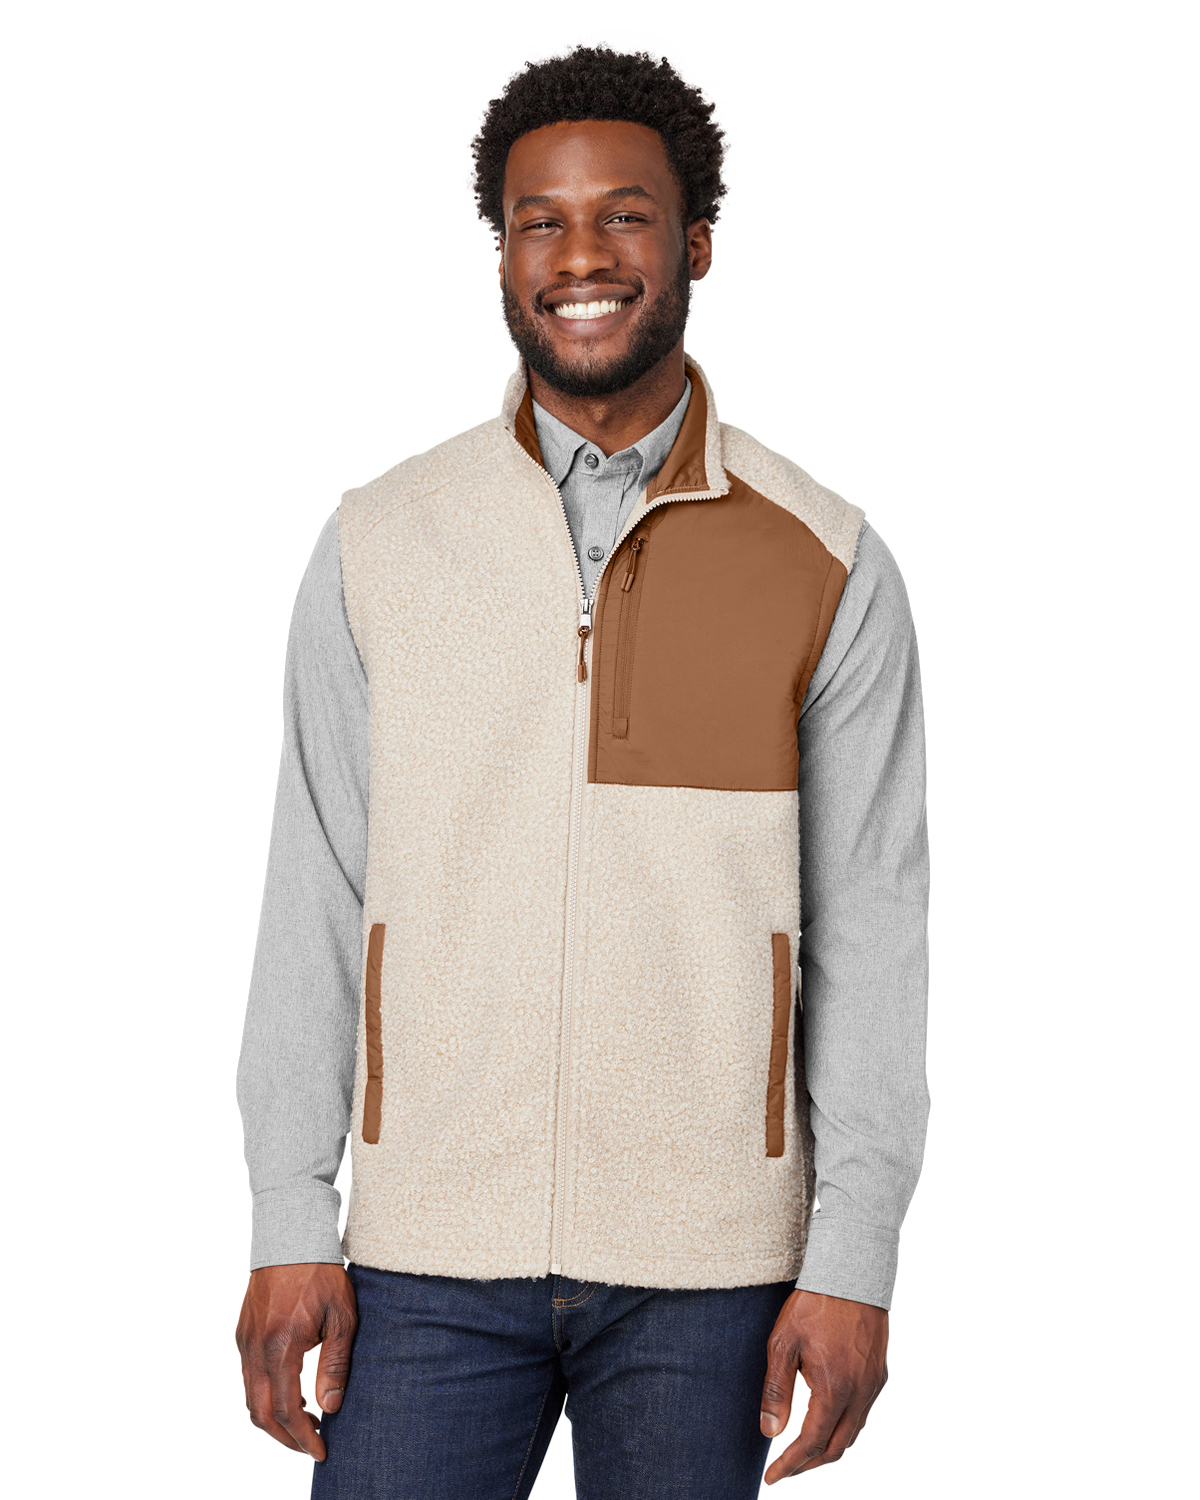 Sweater Fleece Vest (Men's)